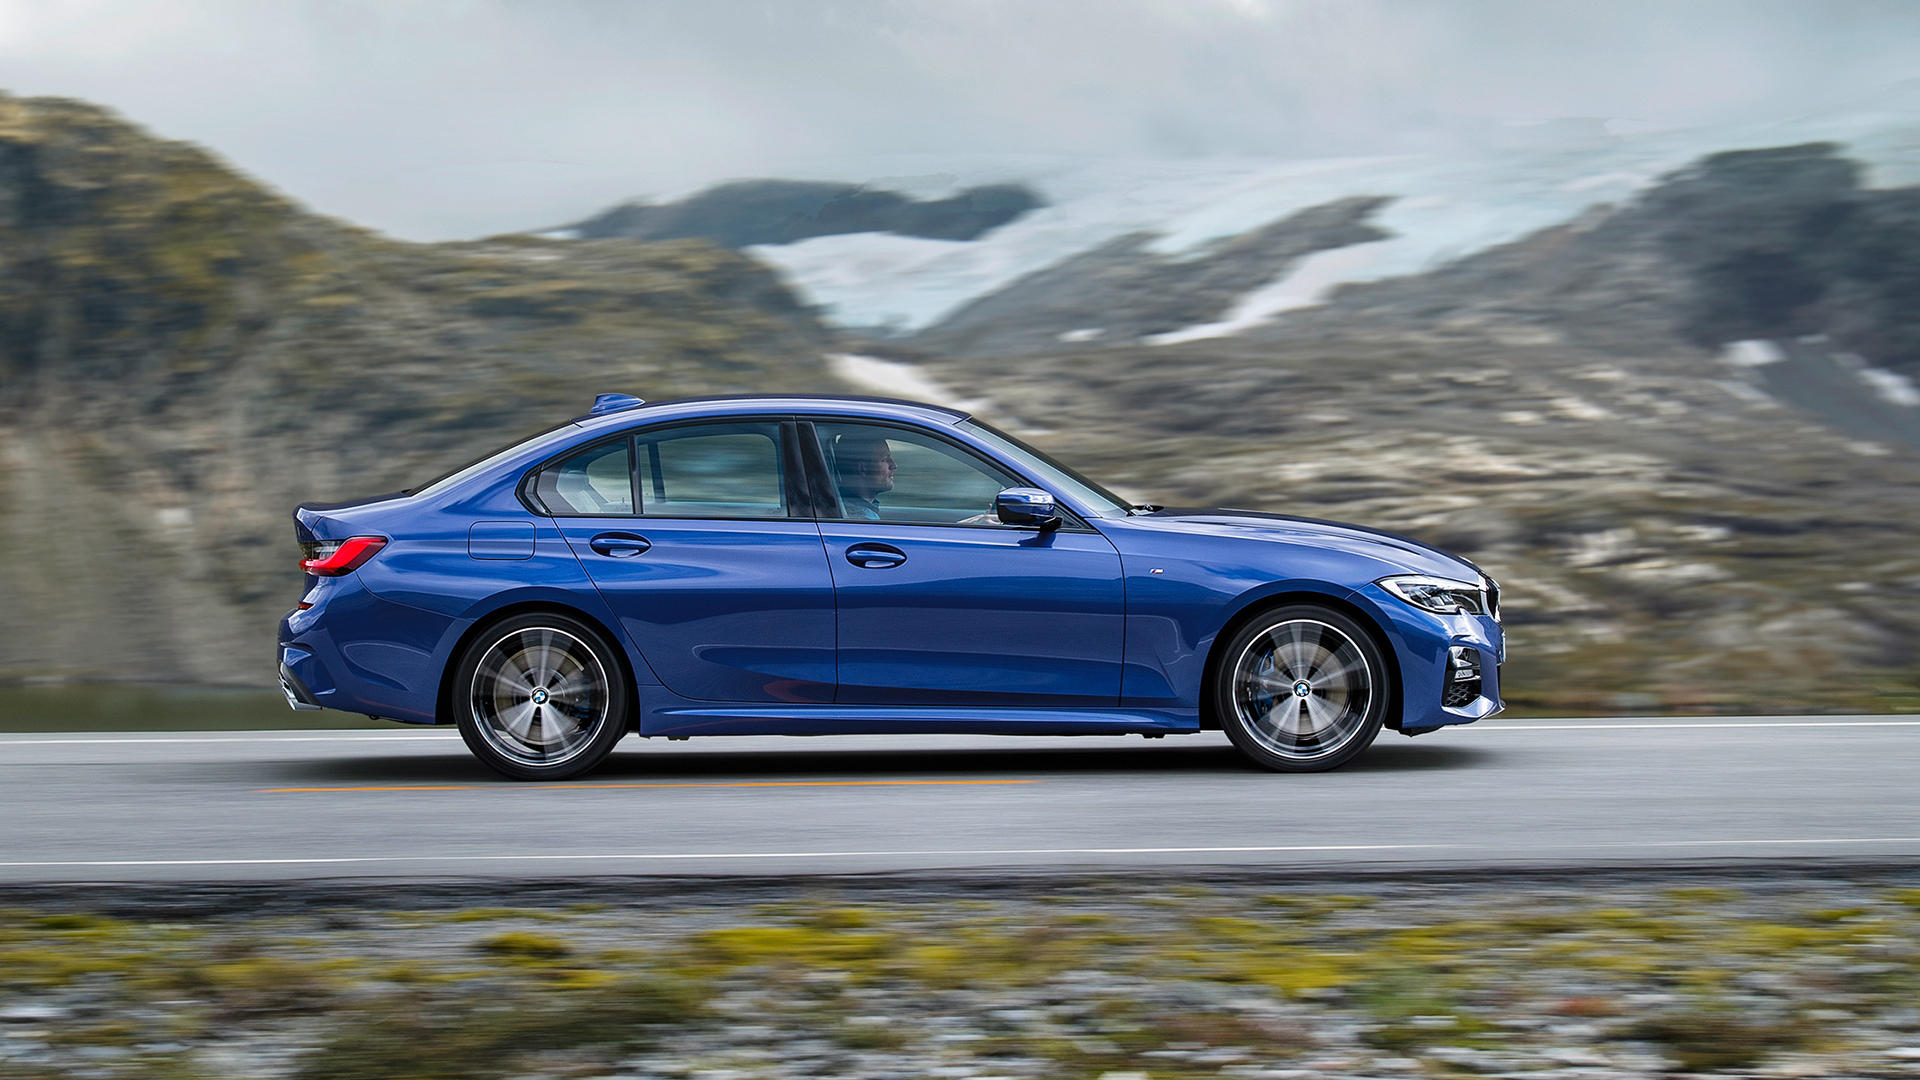 Новая BMW третьей серии (G20) представлена официально